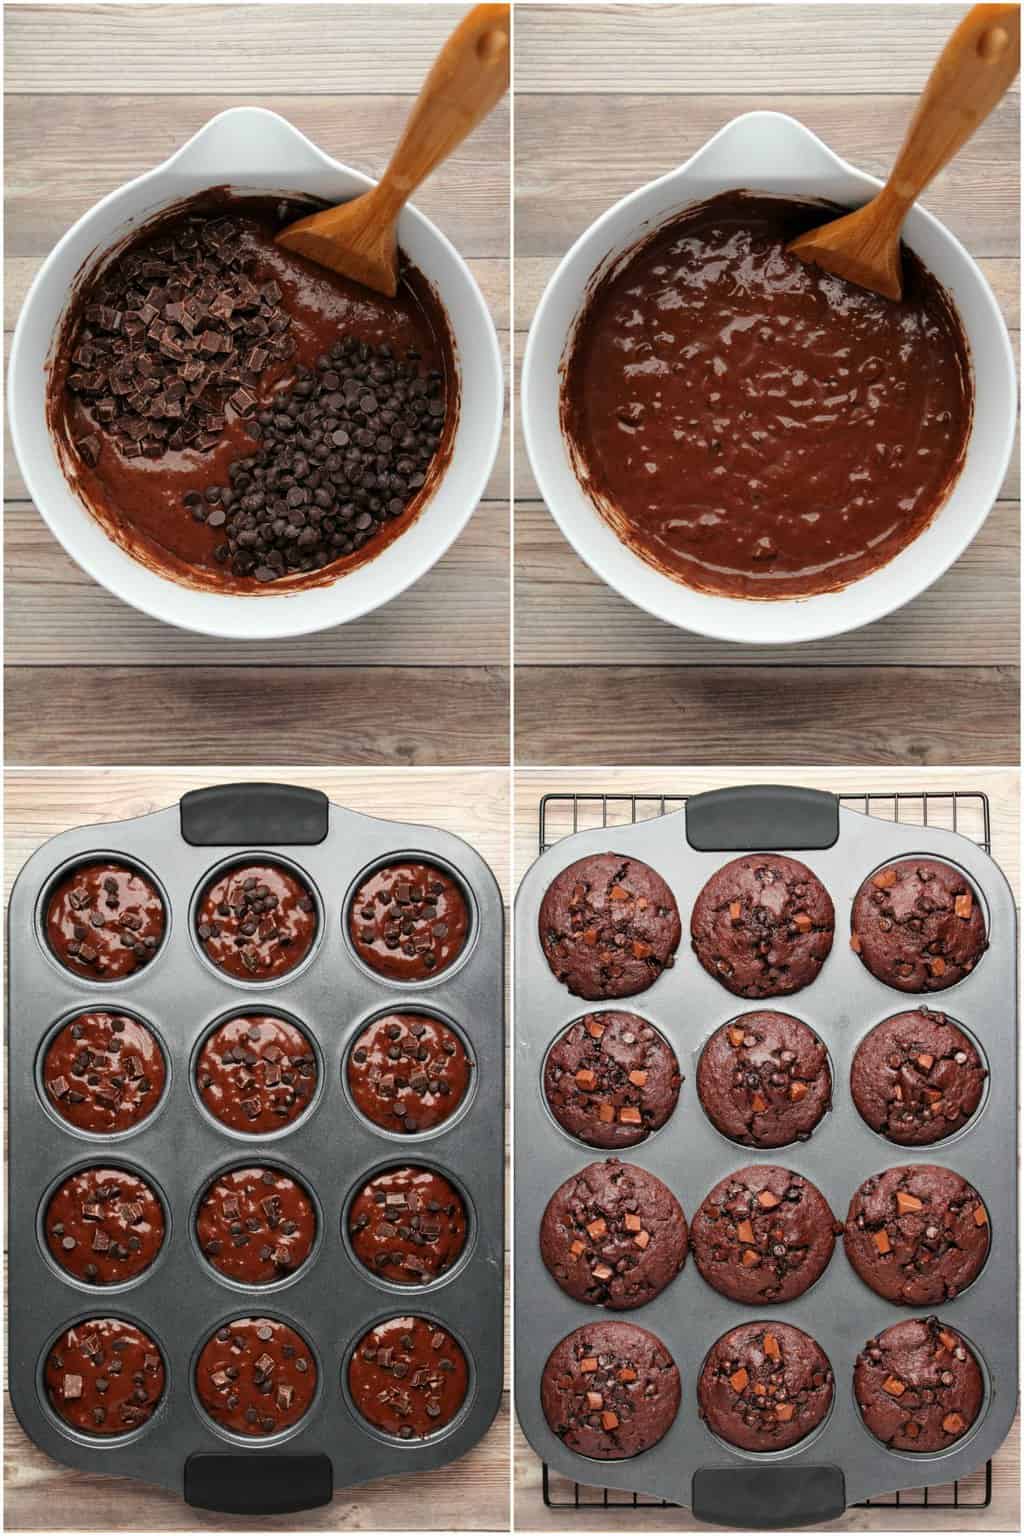 trin for trin proces fotocollage af at gøre dobbelt chokolade veganske chokolade muffins. 